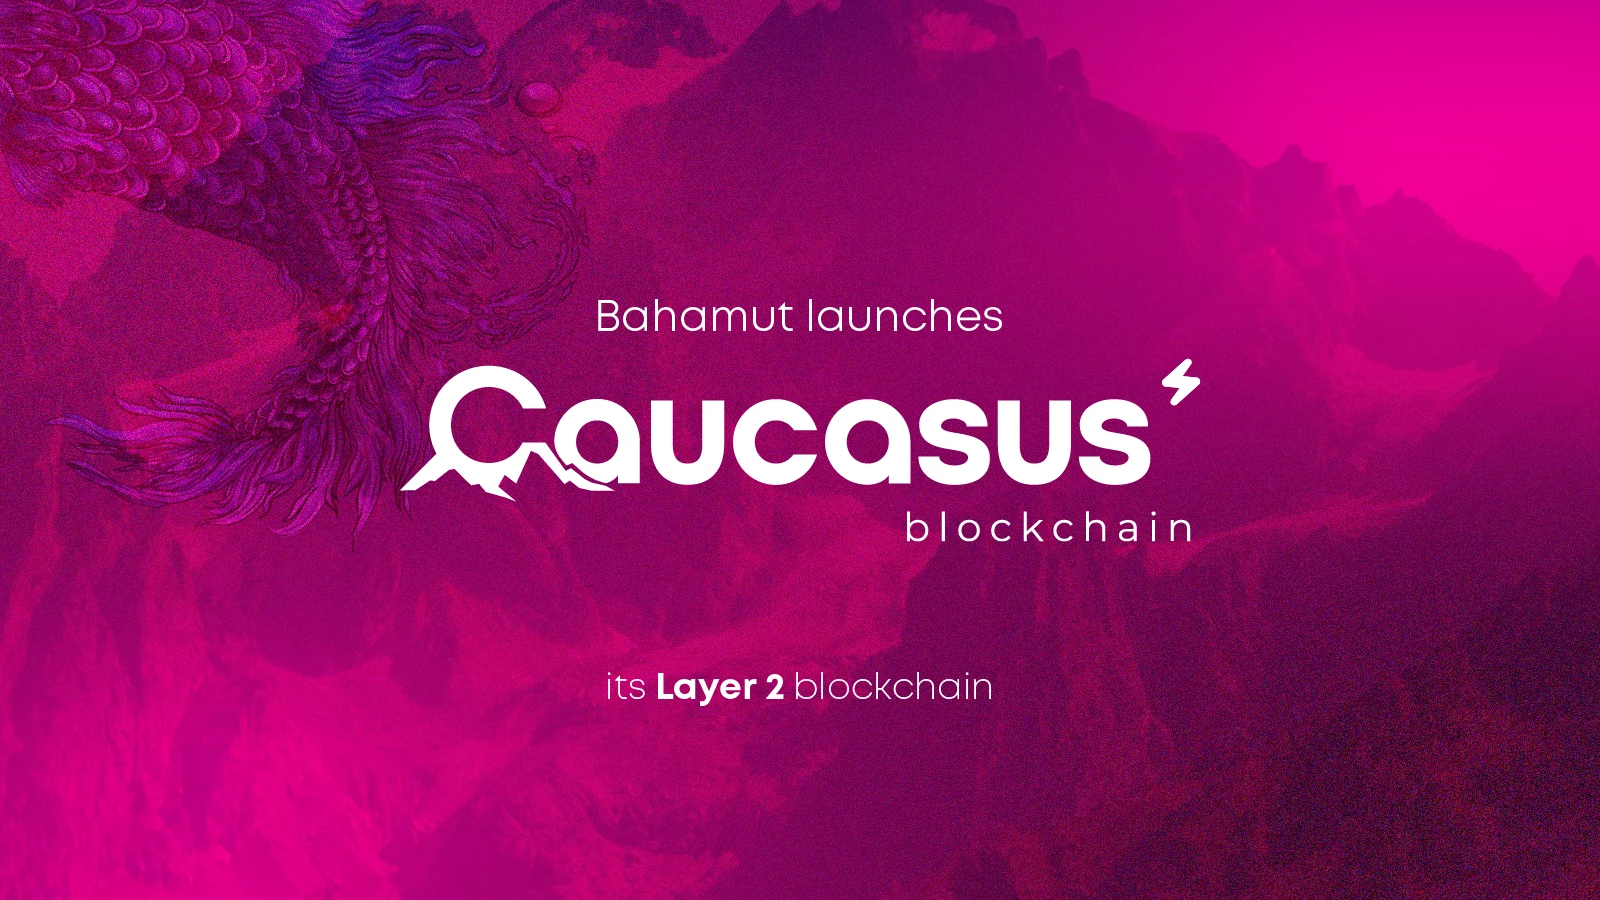 Bahamut lance Caucasus, sa blockchain Layer 2